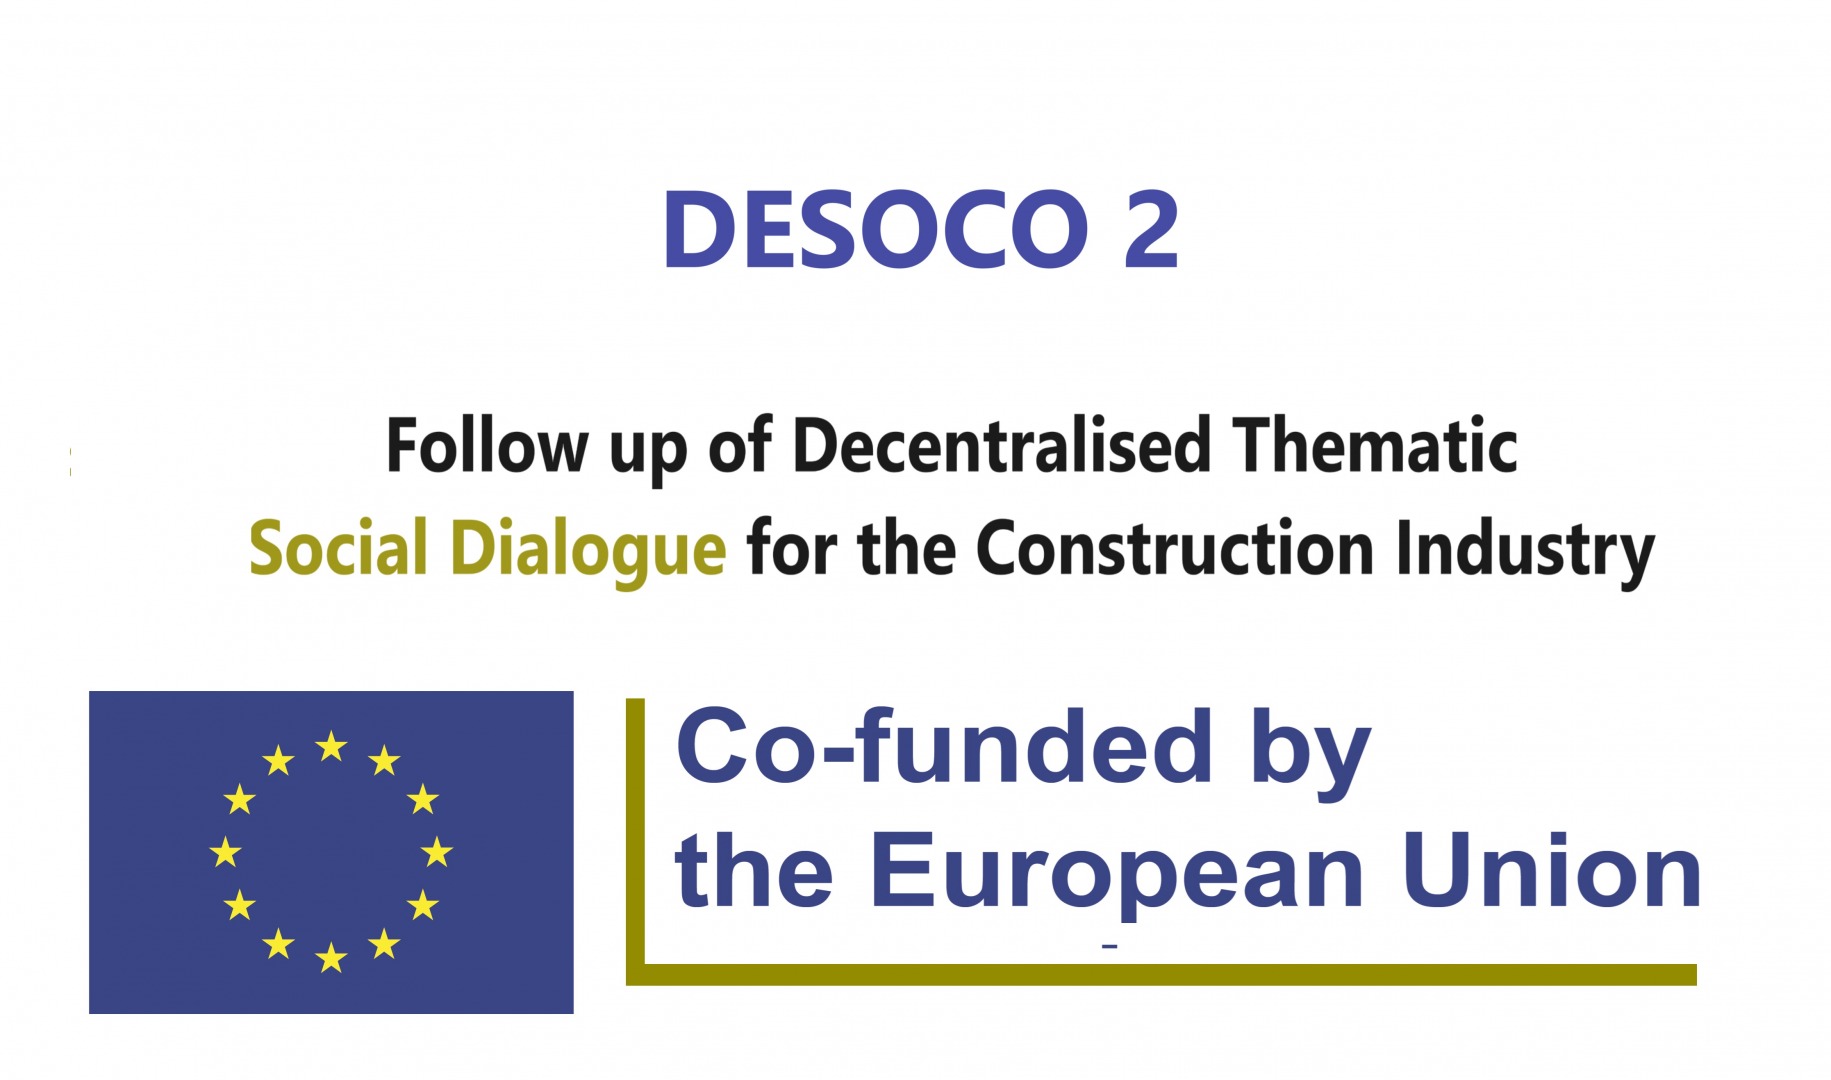 Seguimiento del Diálogo Social Temático Descentralizado para la Industria de la Construcción (DESOCO 2) - Proyecto de Diálogo Social